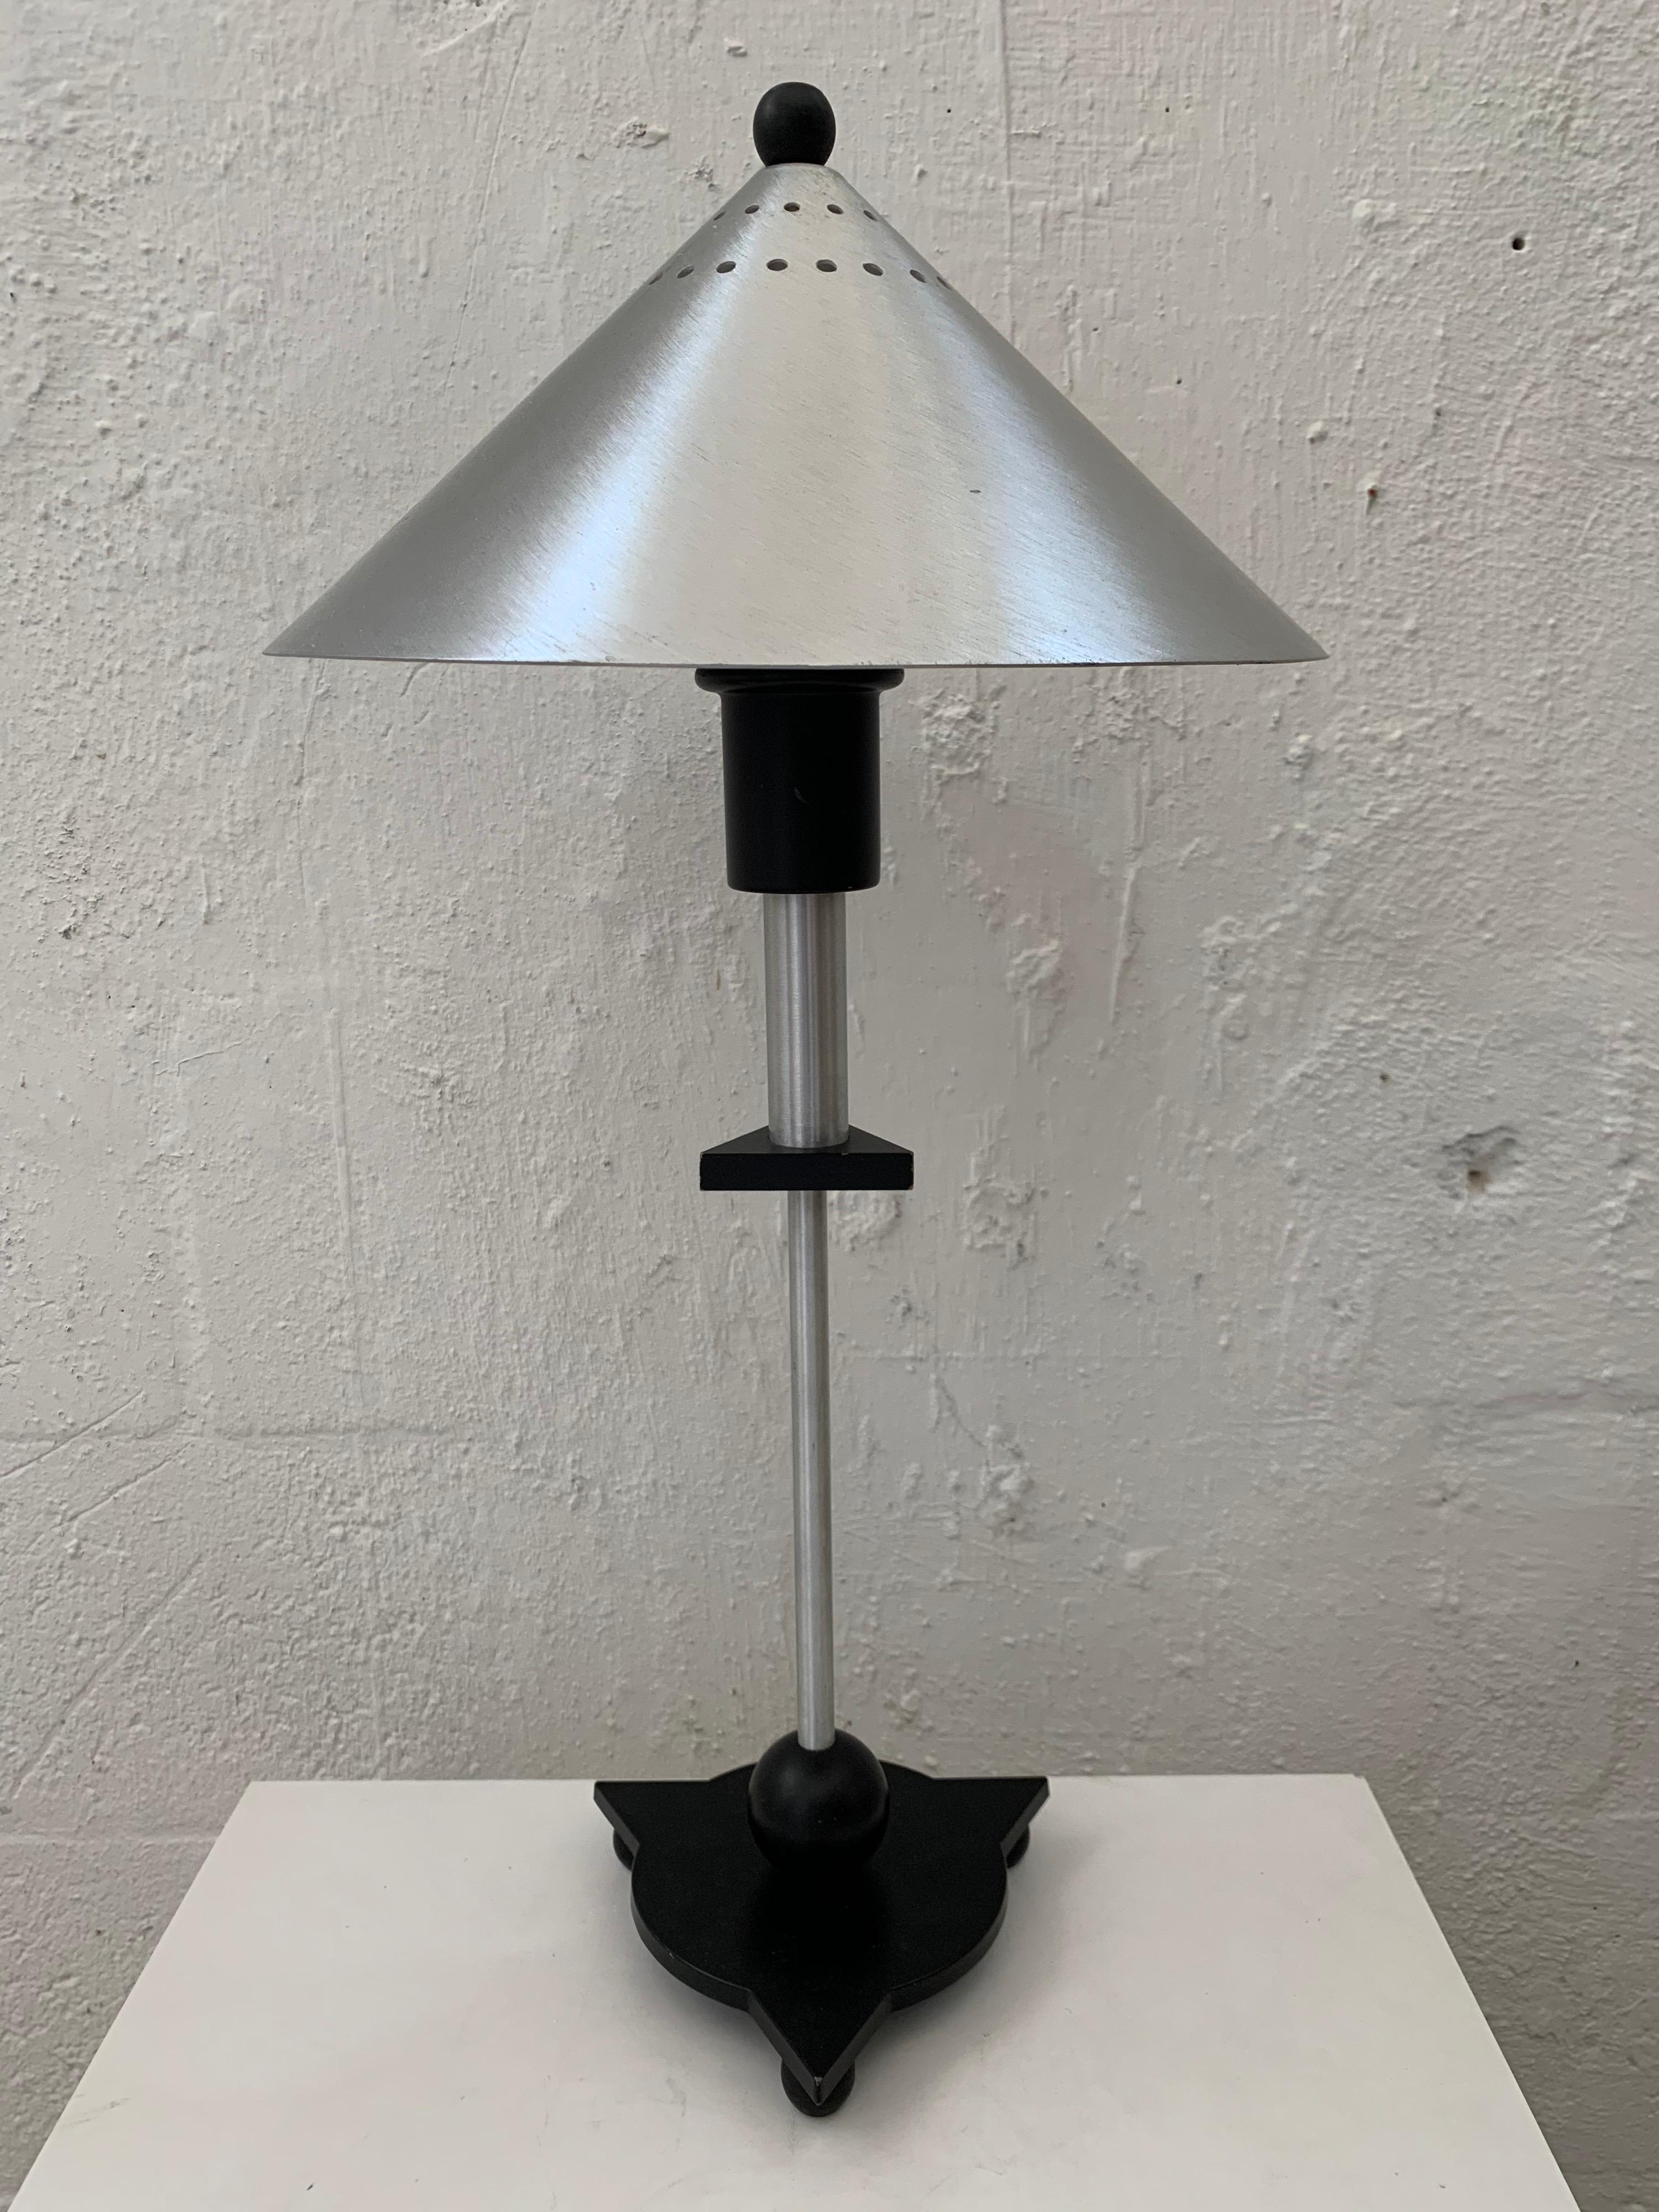 Satz von zwei postmodernen Tischlampen im Memphis-Stil aus rostfreiem Stahl und geometrischen, schwarz lackierten Holzelementen, von BE-YANG, 1980er Jahre.